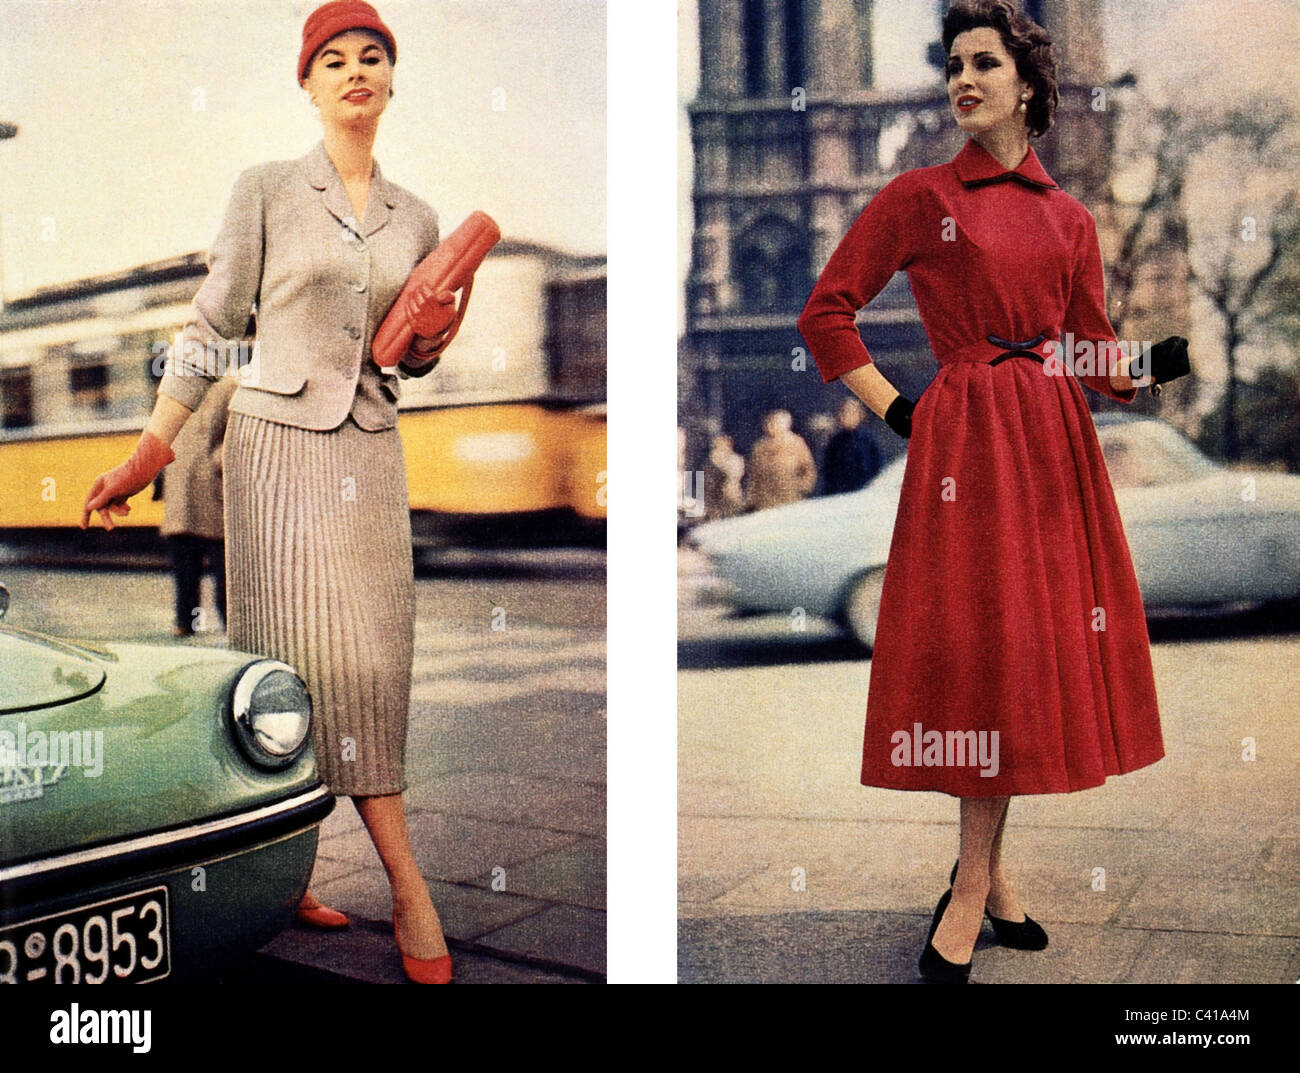 Mode des années 50 Banque de photographies et d'images à haute résolution -  Alamy